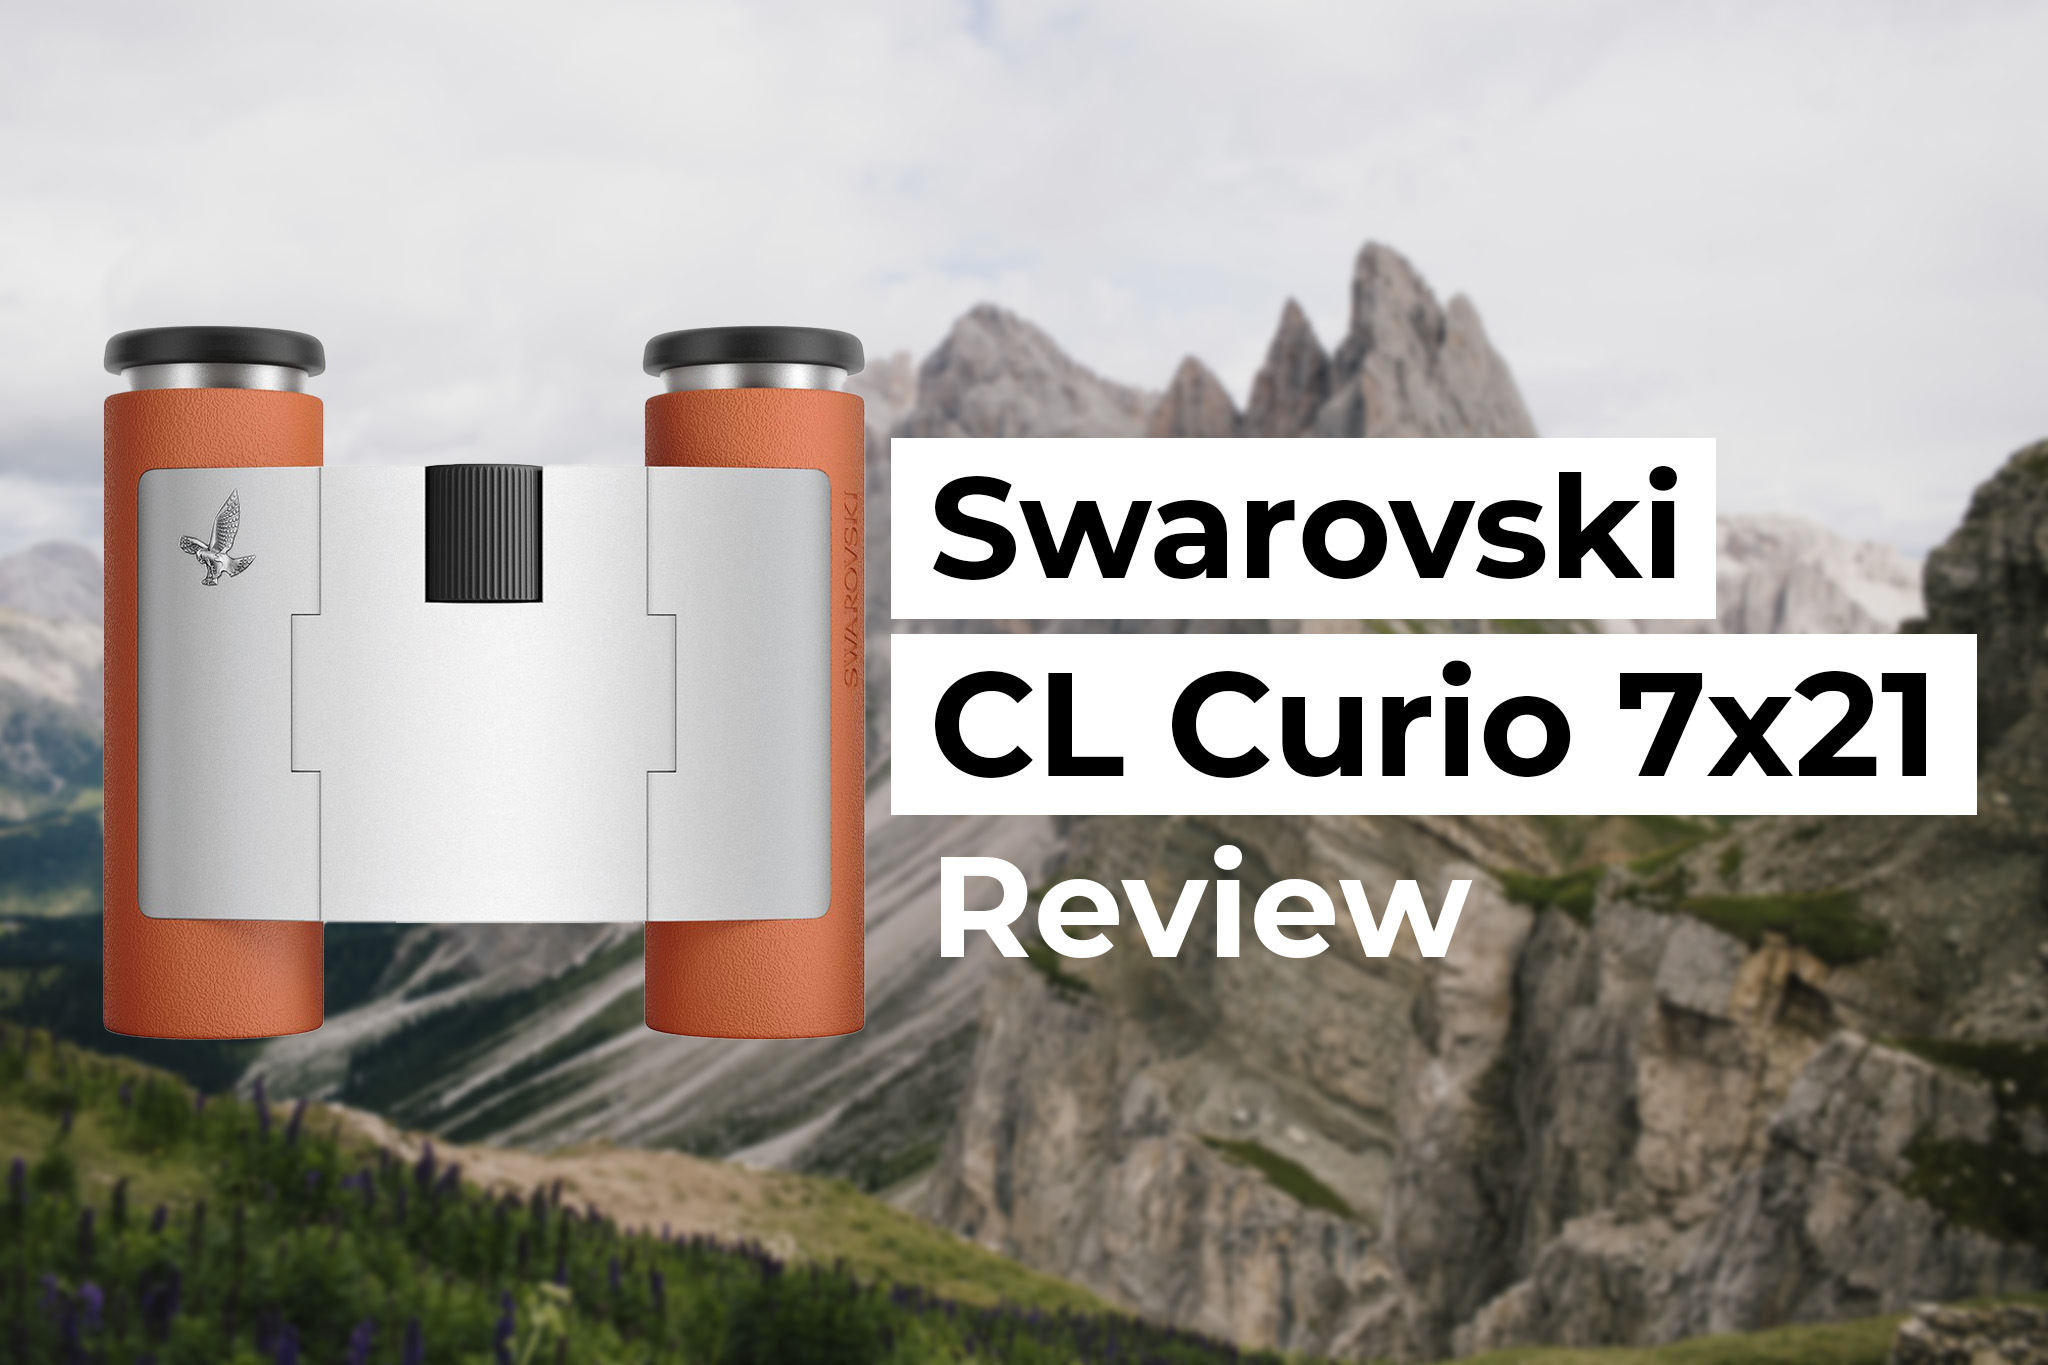 Hiking with Swarovski CL Curio 7x21